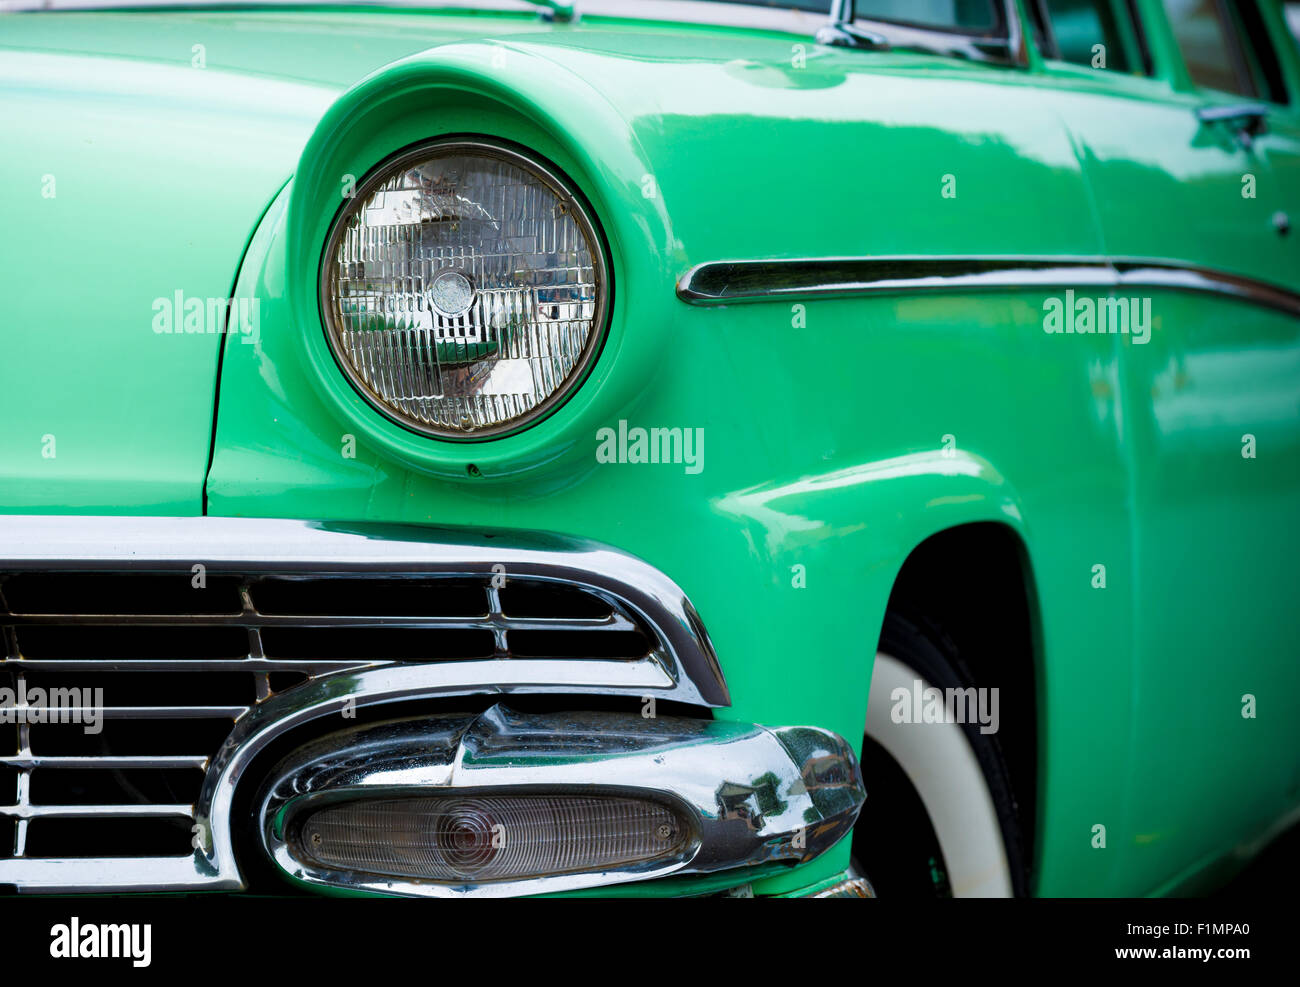 Ein 50er Jahre klassische amerikanische Automobil in grün Stockfoto